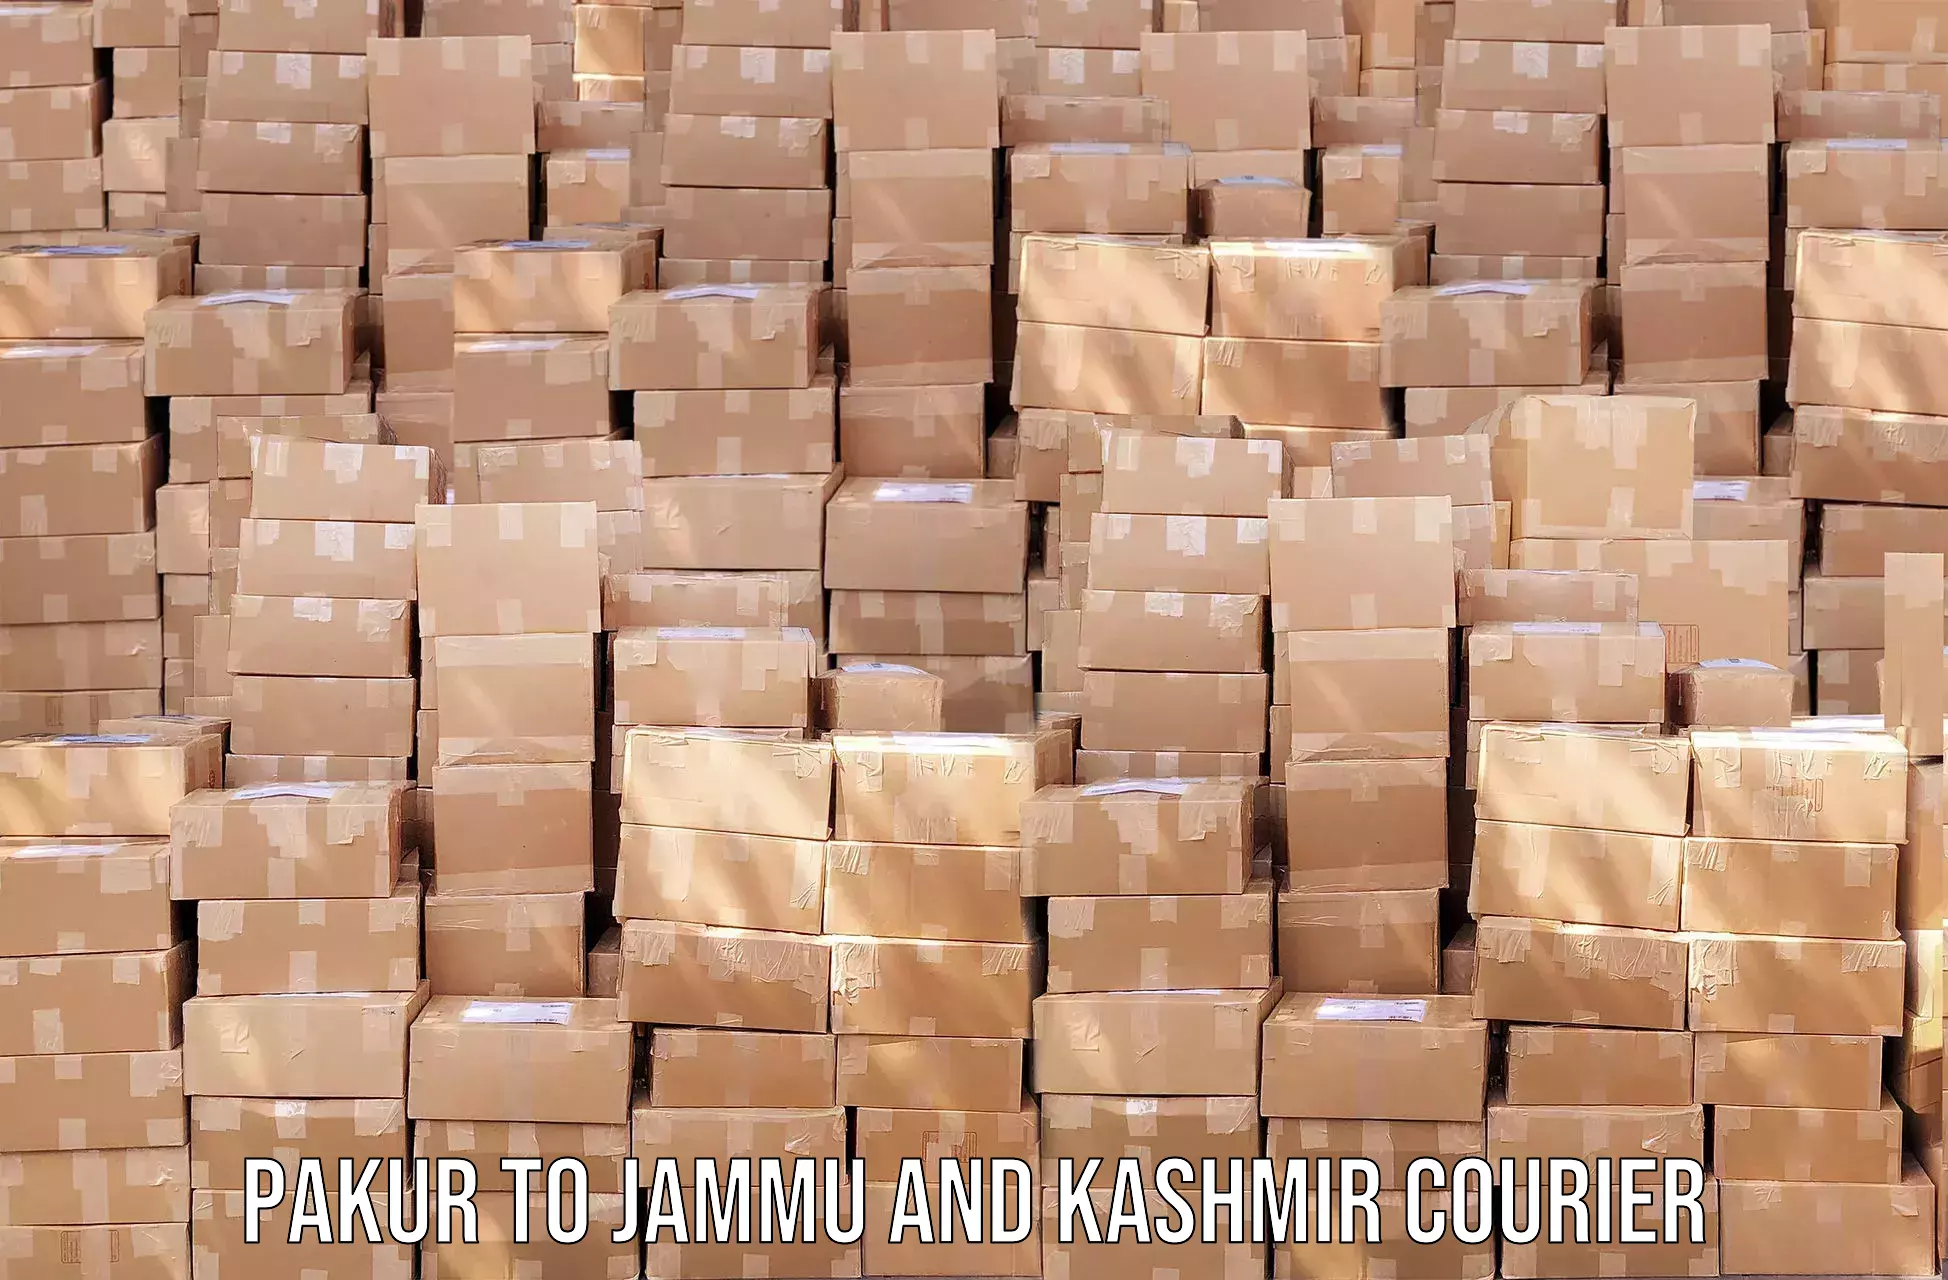 Nationwide shipping capabilities Pakur to IIT Jammu